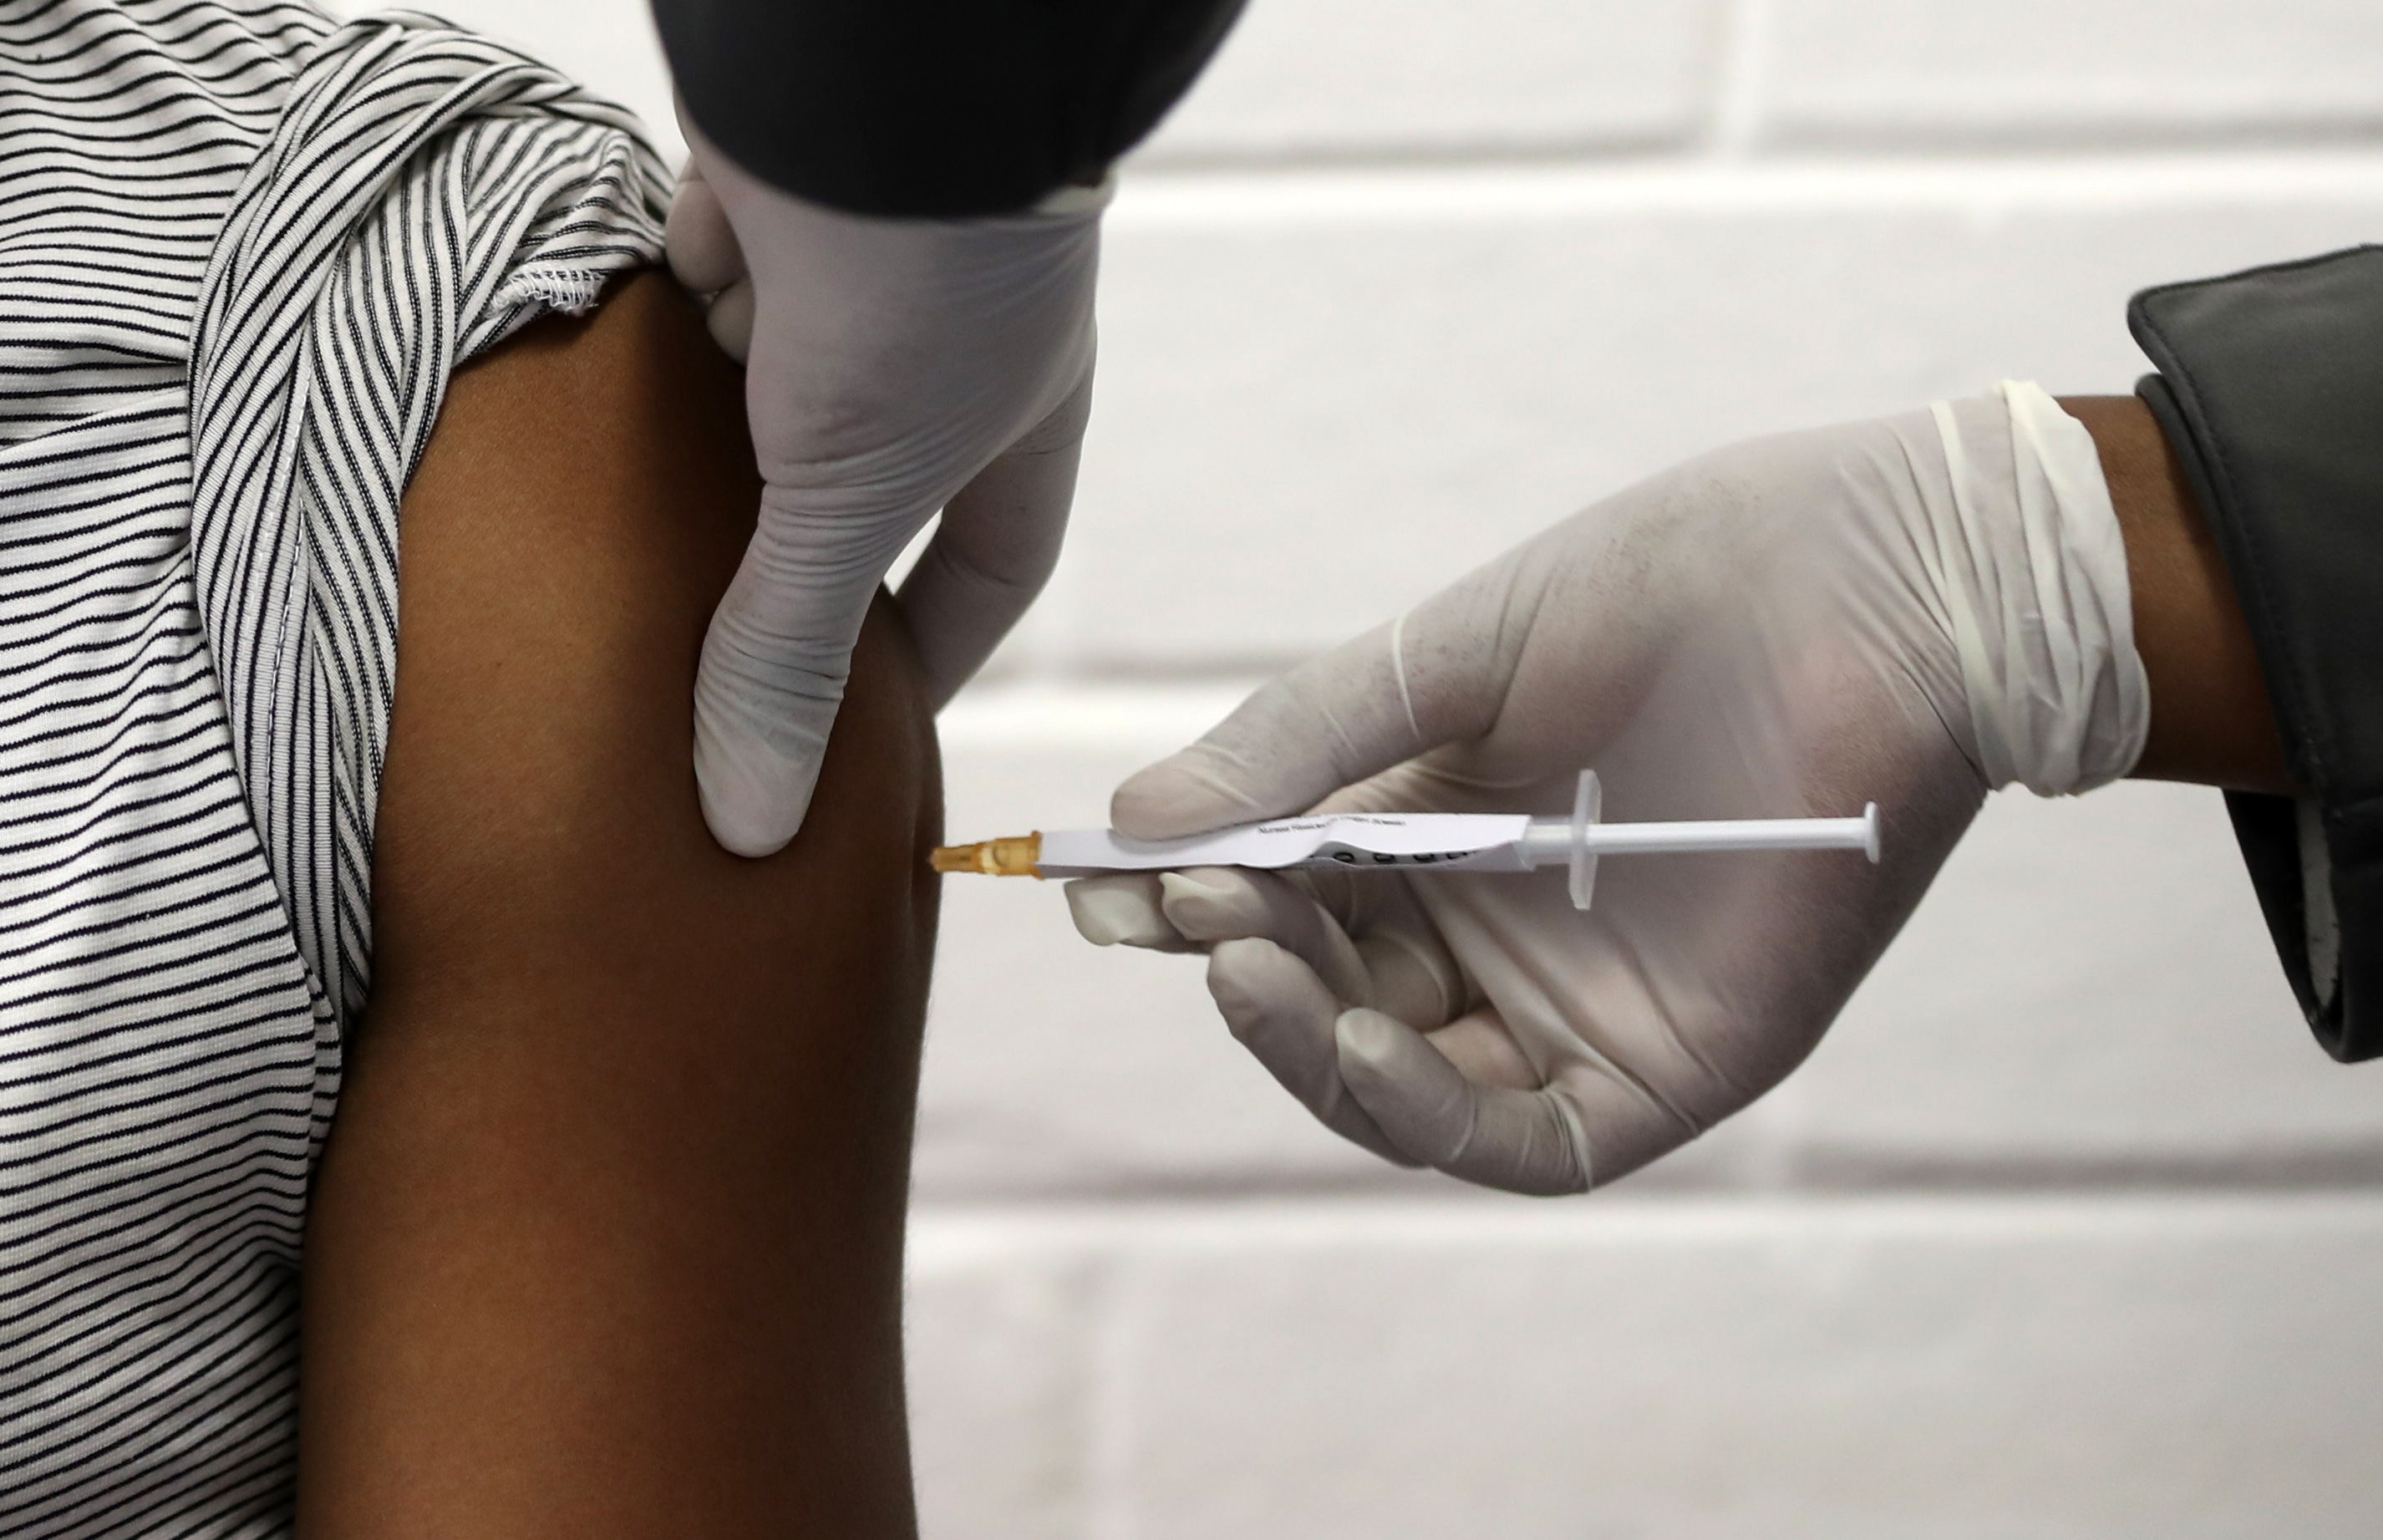 La potencial vacuna de AstraZeneca está en la fase 3 de los ensayos clínicos, la última antes de recibir su aprobación de las autoridades reguladoras. EFE/Siphiwe Sibeko/
